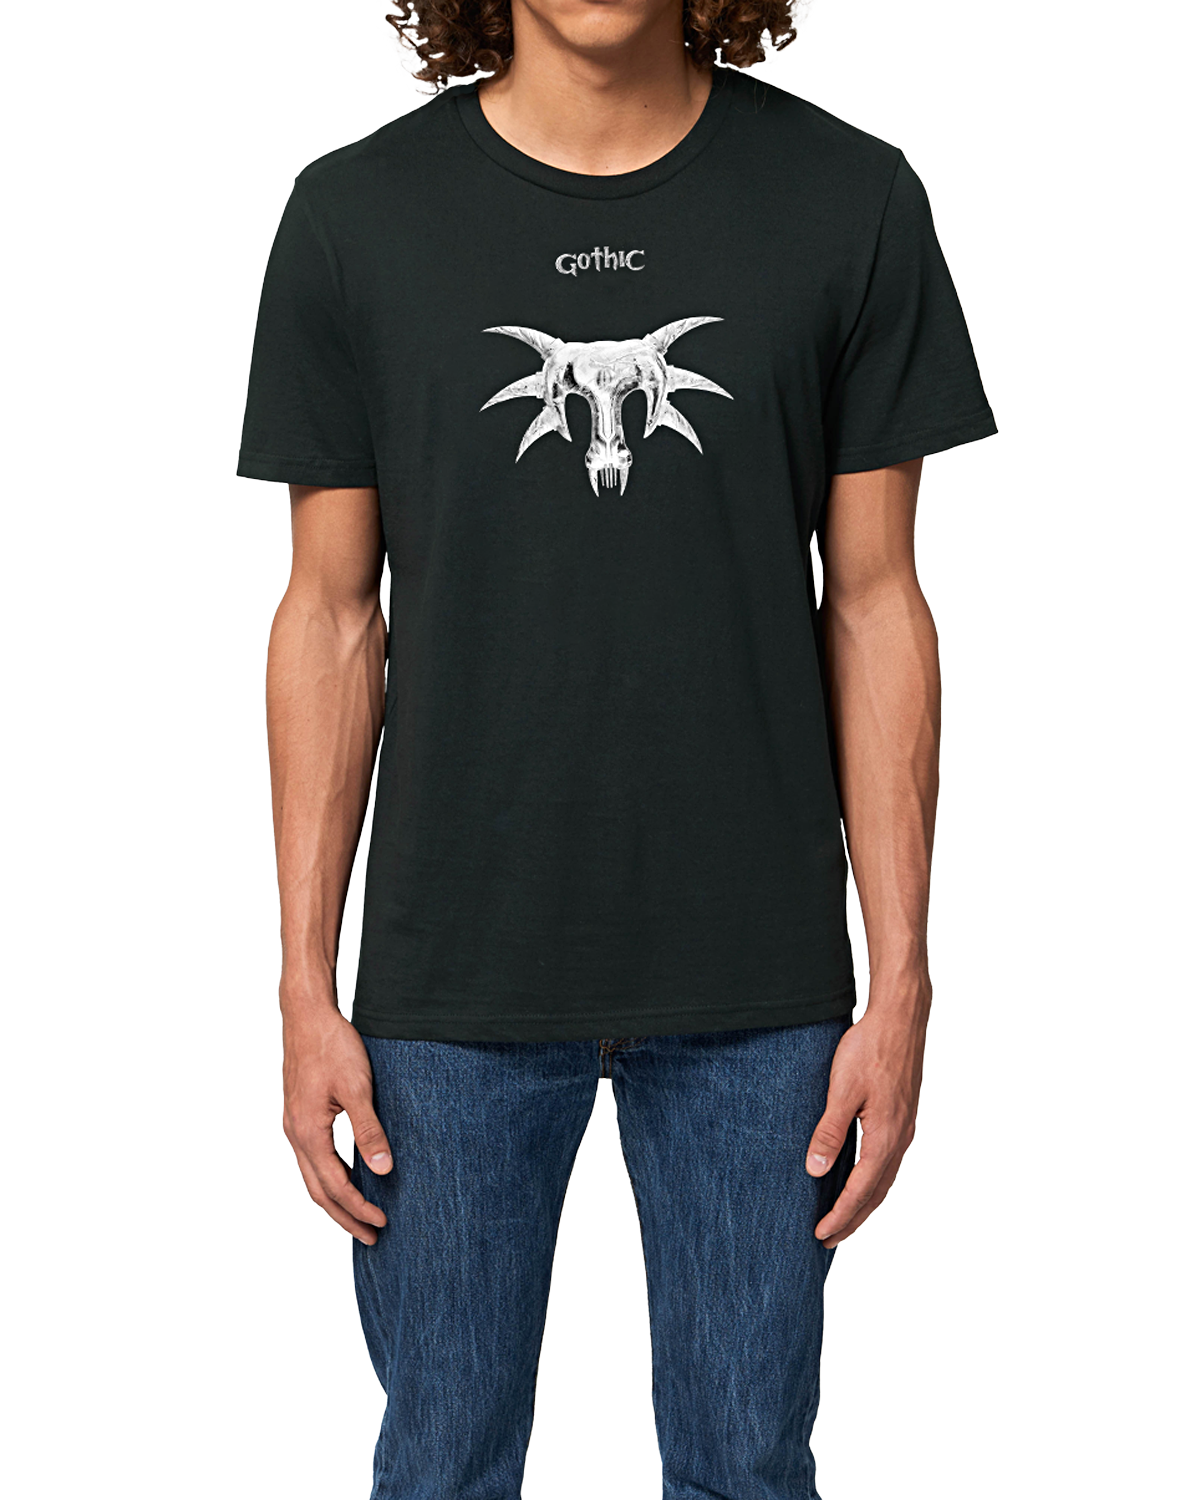 Gothic T-Shirt "Sleeper Mask"